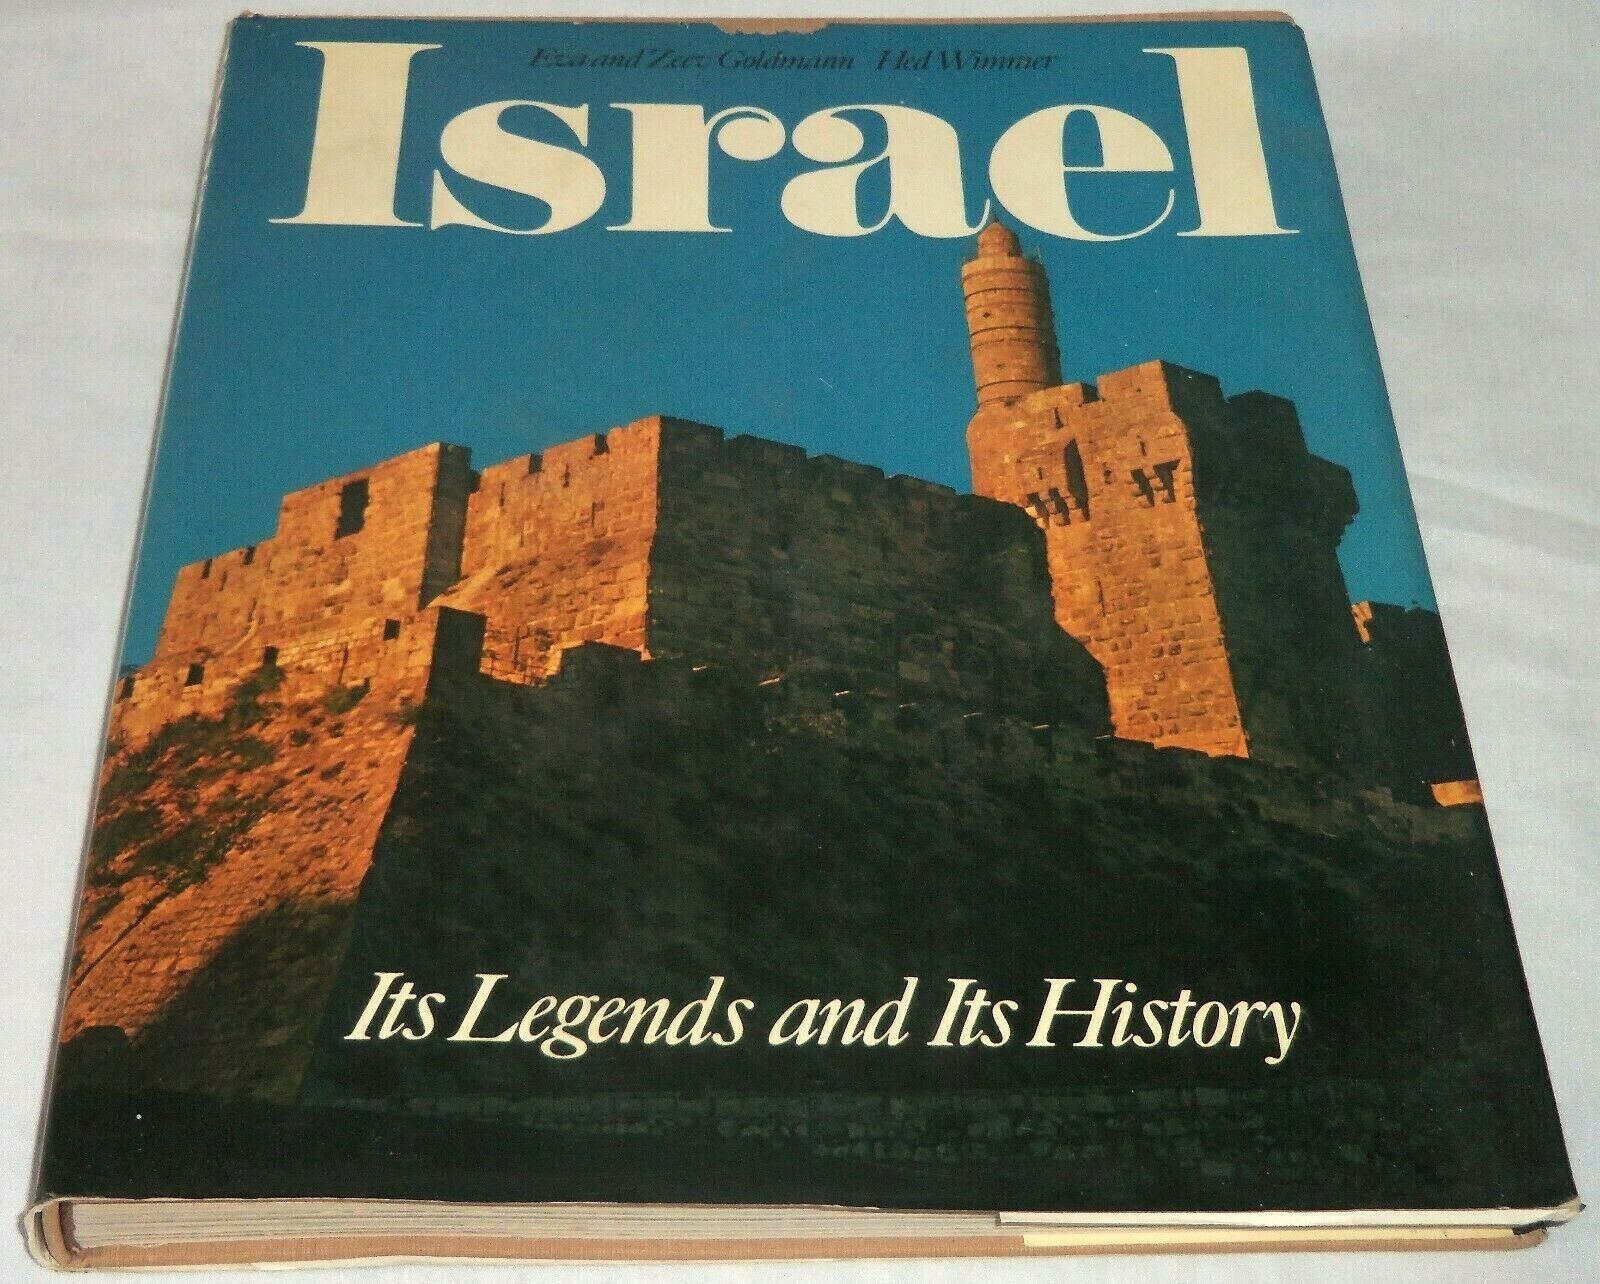 VTG 1975 Israel Its Legends & Its History by Eva Zeev Goldmann Illustrated Book